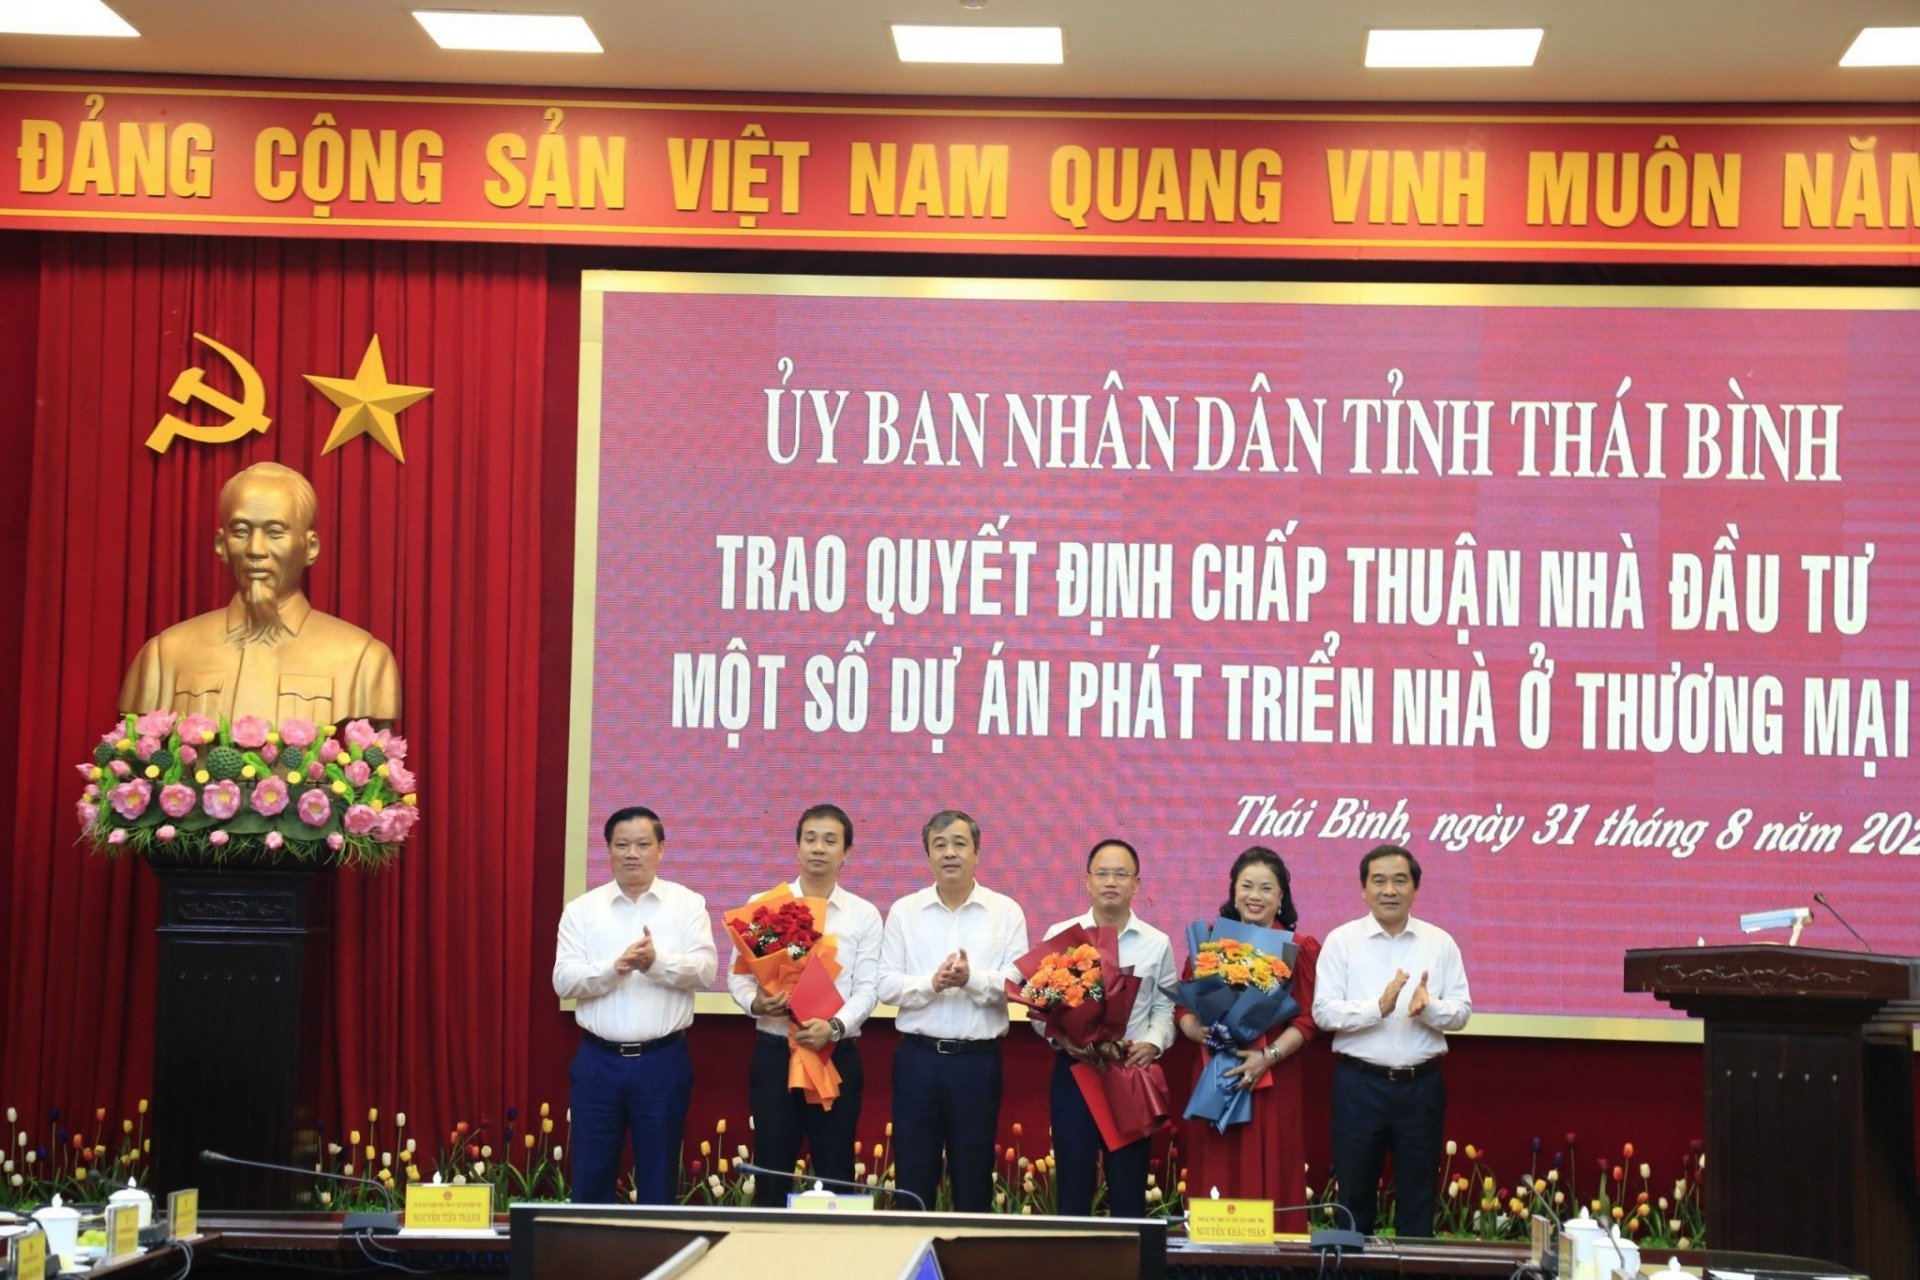 Thái Bình: Trao quyết định chấp thuận nhà đầu tư 3 dự án phát triển nhà ở thương mại